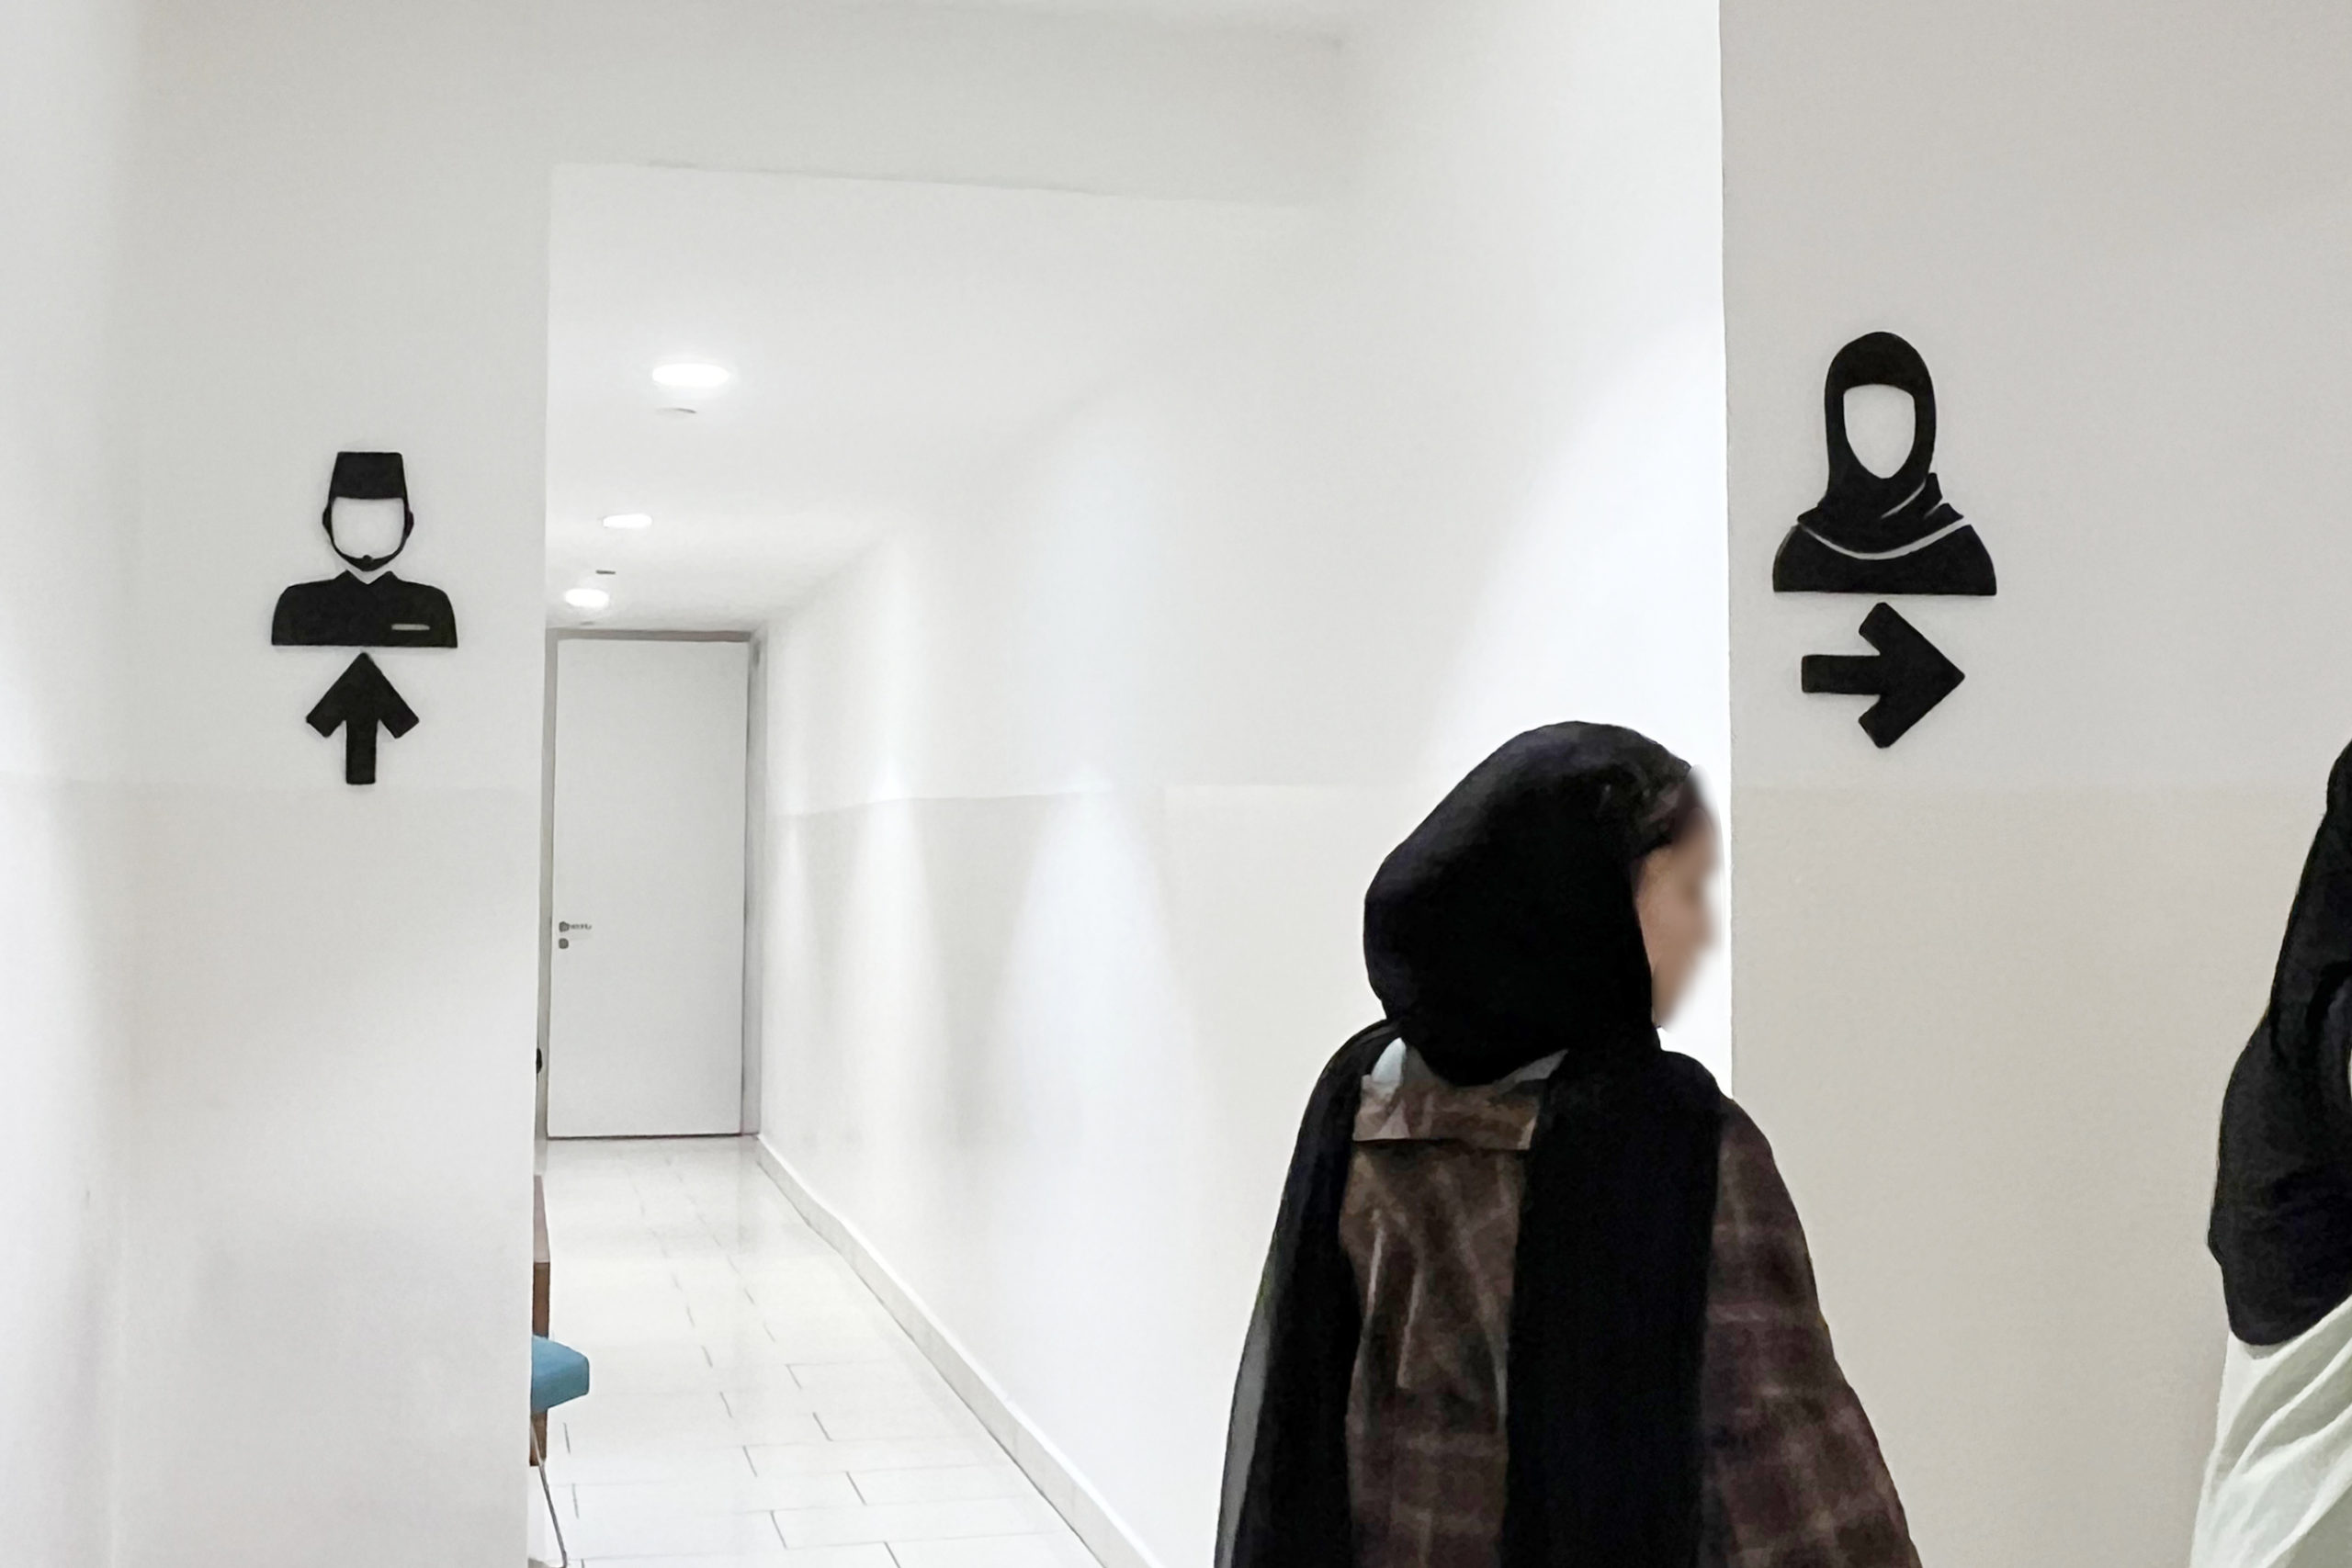 トイレの案内も特徴的で、男性はヒゲ、女性はヒジャブで表現されています